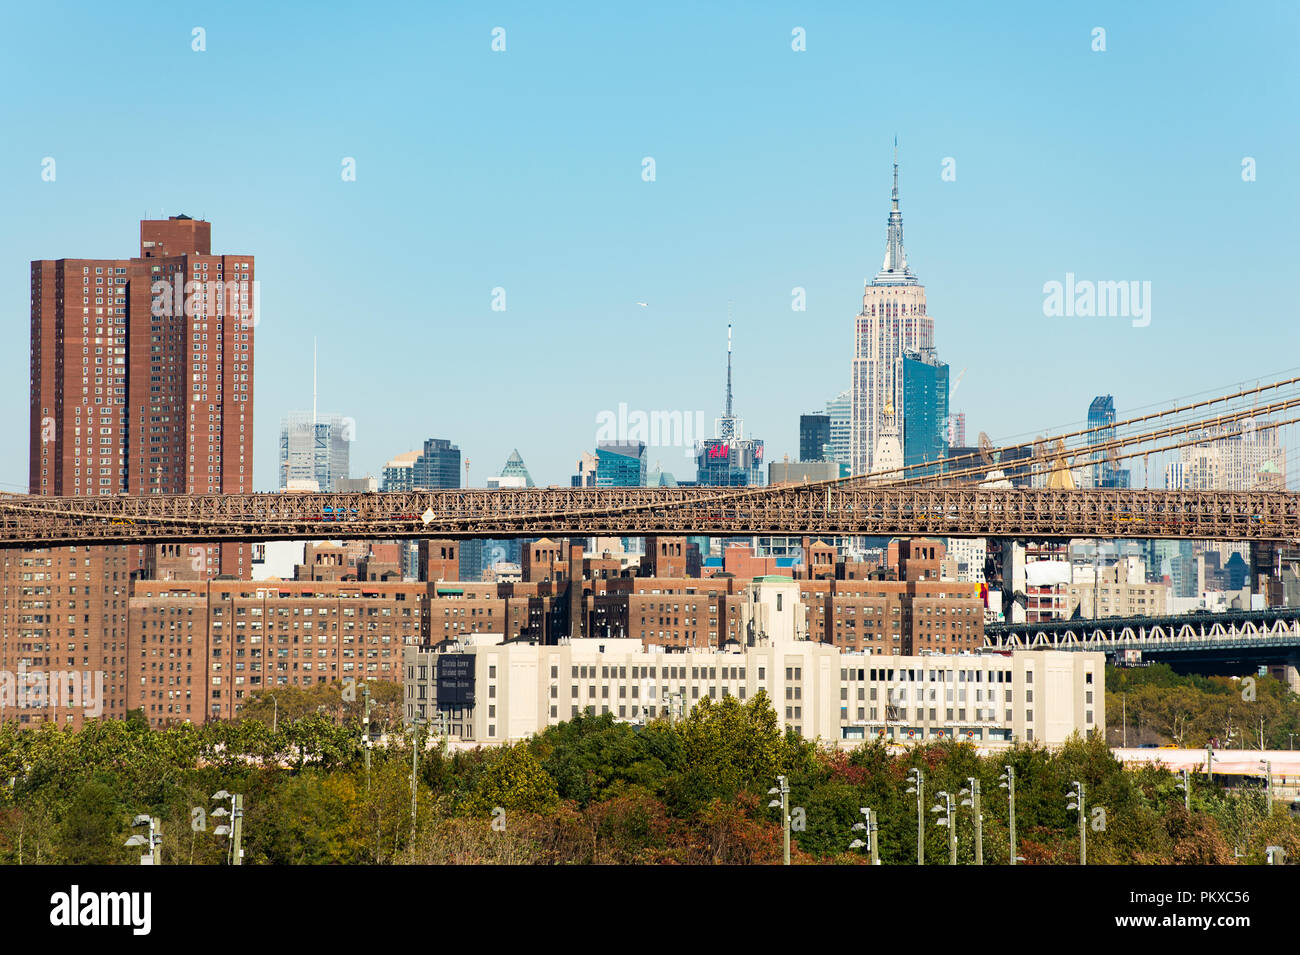 MANHATTAN - NEW YORK - Stati Uniti d'America - 30 ottobre 2017. Incredibile vista dello skyline di Manhattan con l' Empire State Building sullo sfondo e il Brooklyn Brid Foto Stock